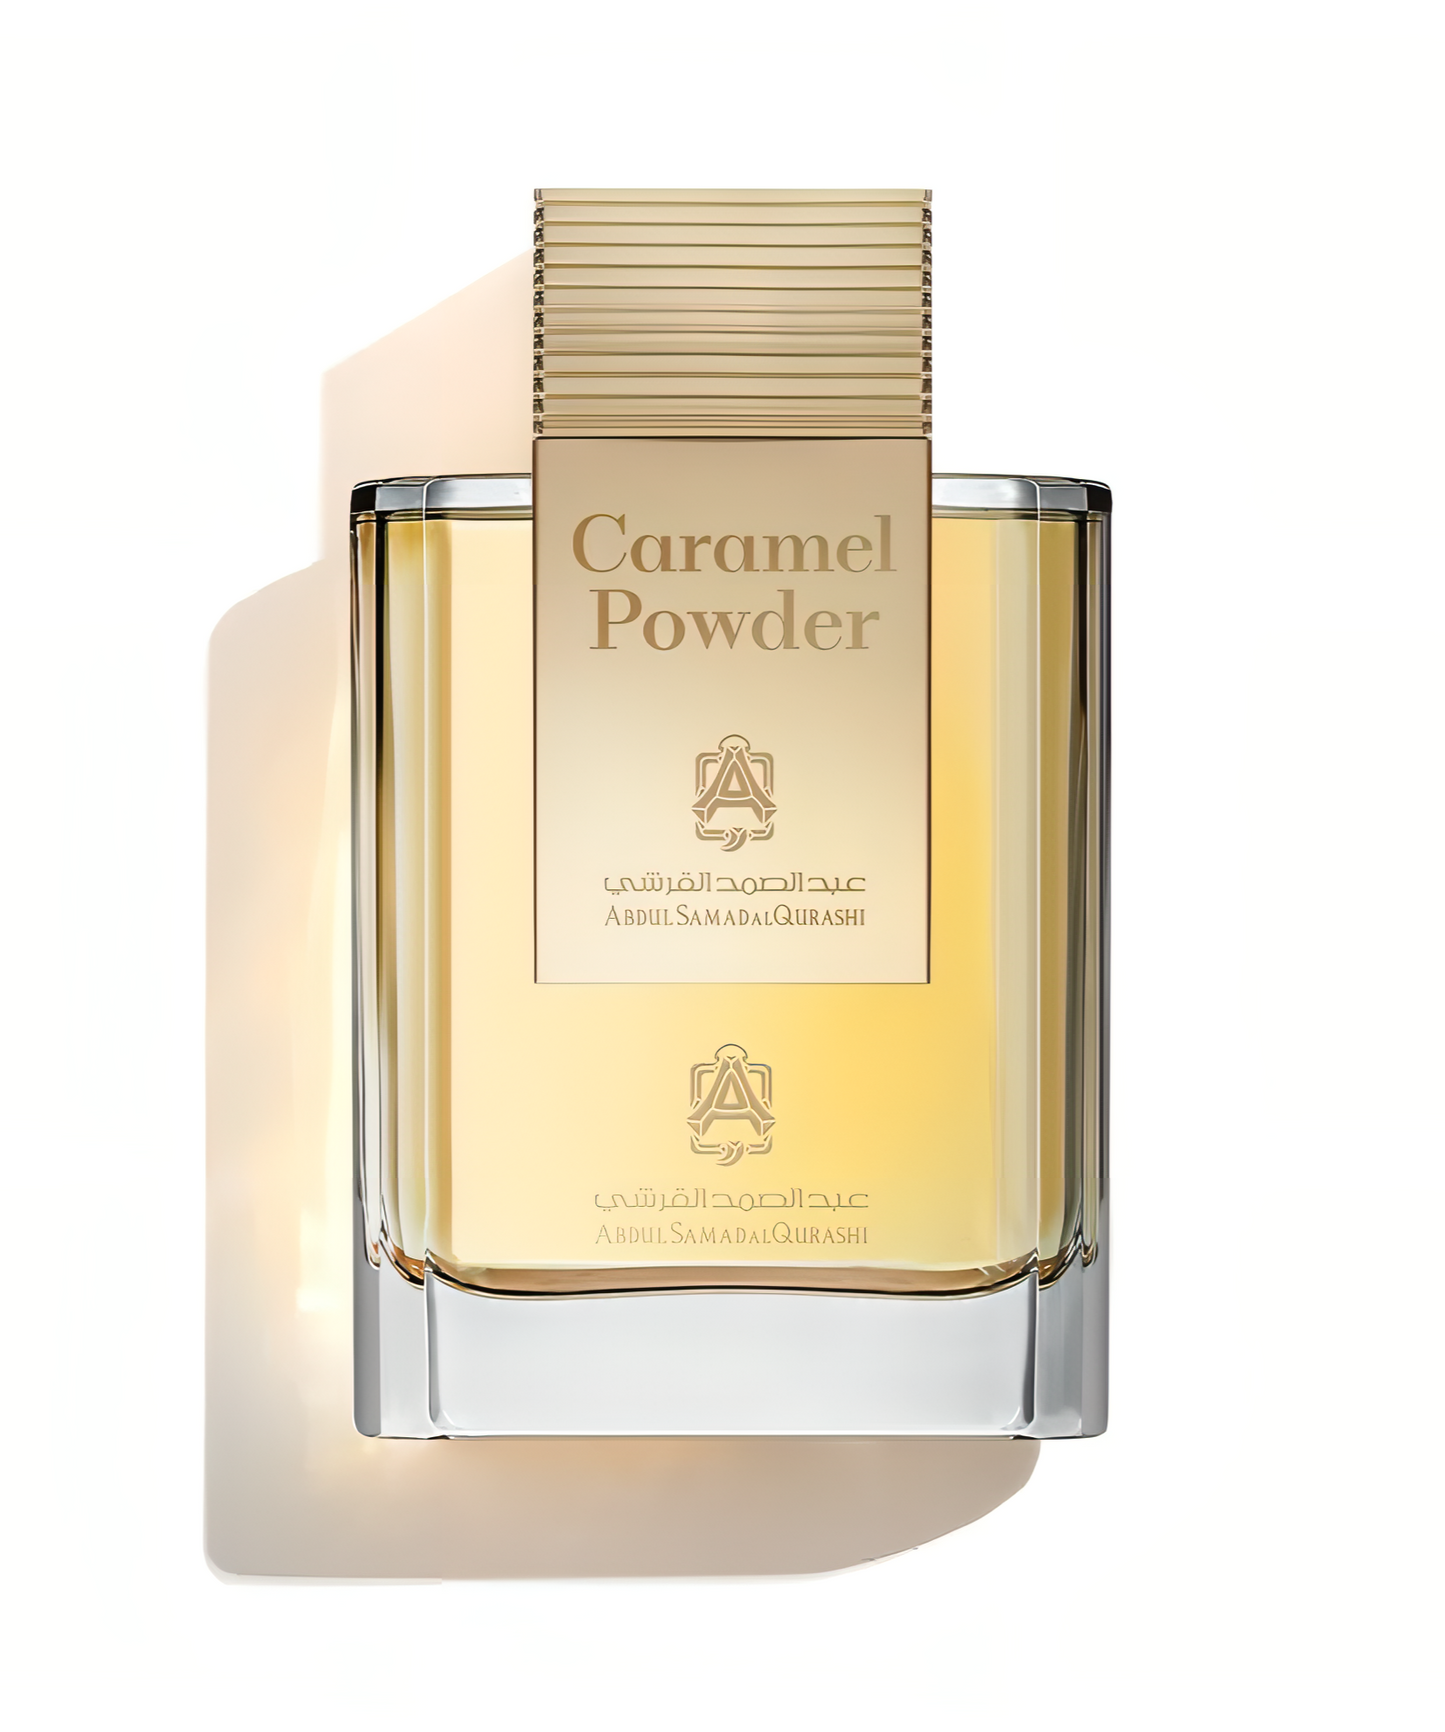 Caramel Powder Limited Edition Abdul Samad Al Qurashi Parfum Sample 2ml